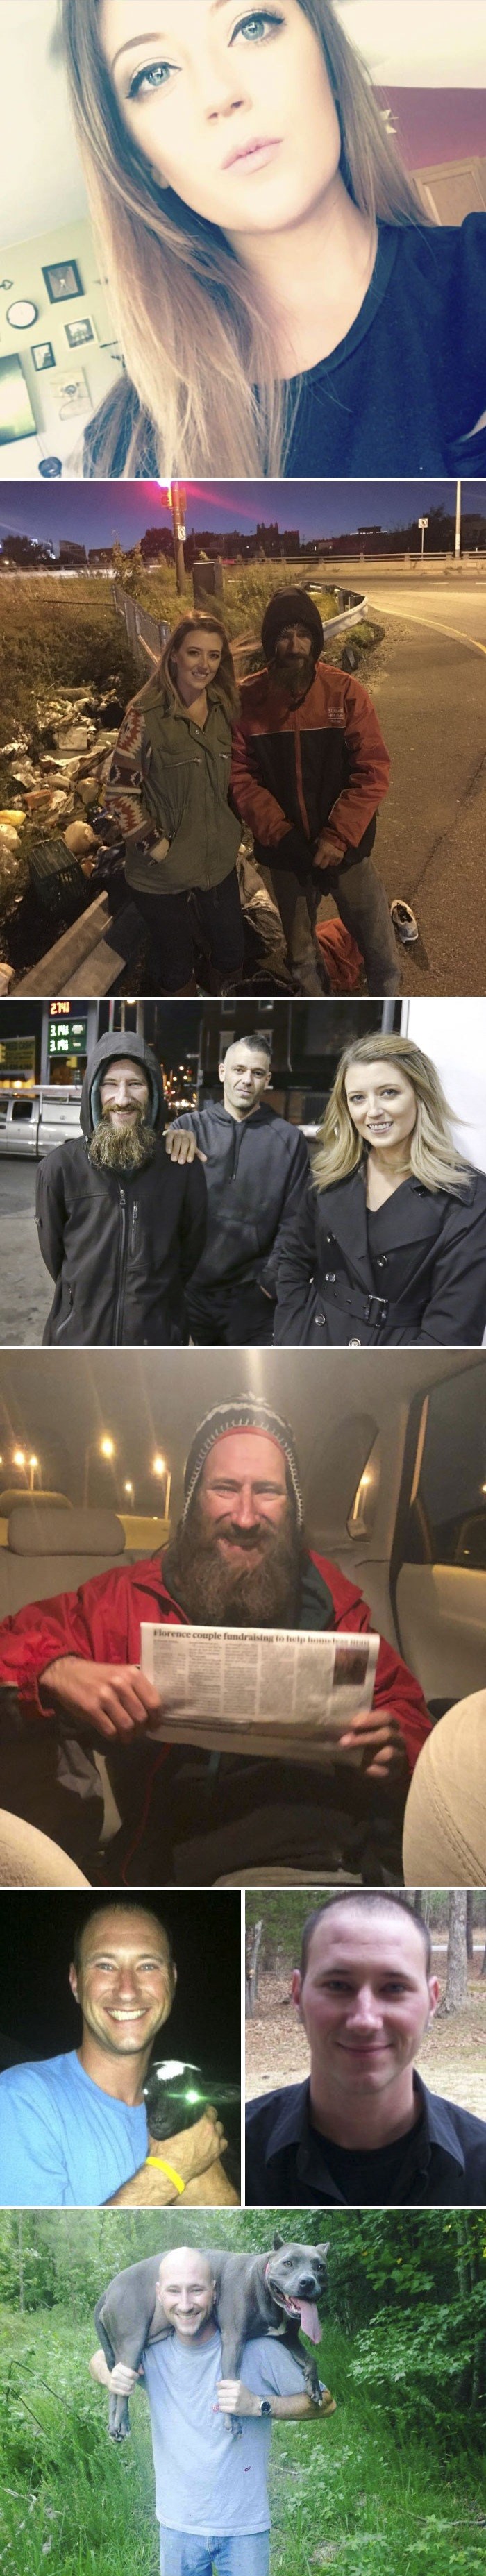 Beskućnik dao svojih zadnjih 20 dolara kako bi pomogao nepoznatoj djevojci, taj događaj mu je promijenio život